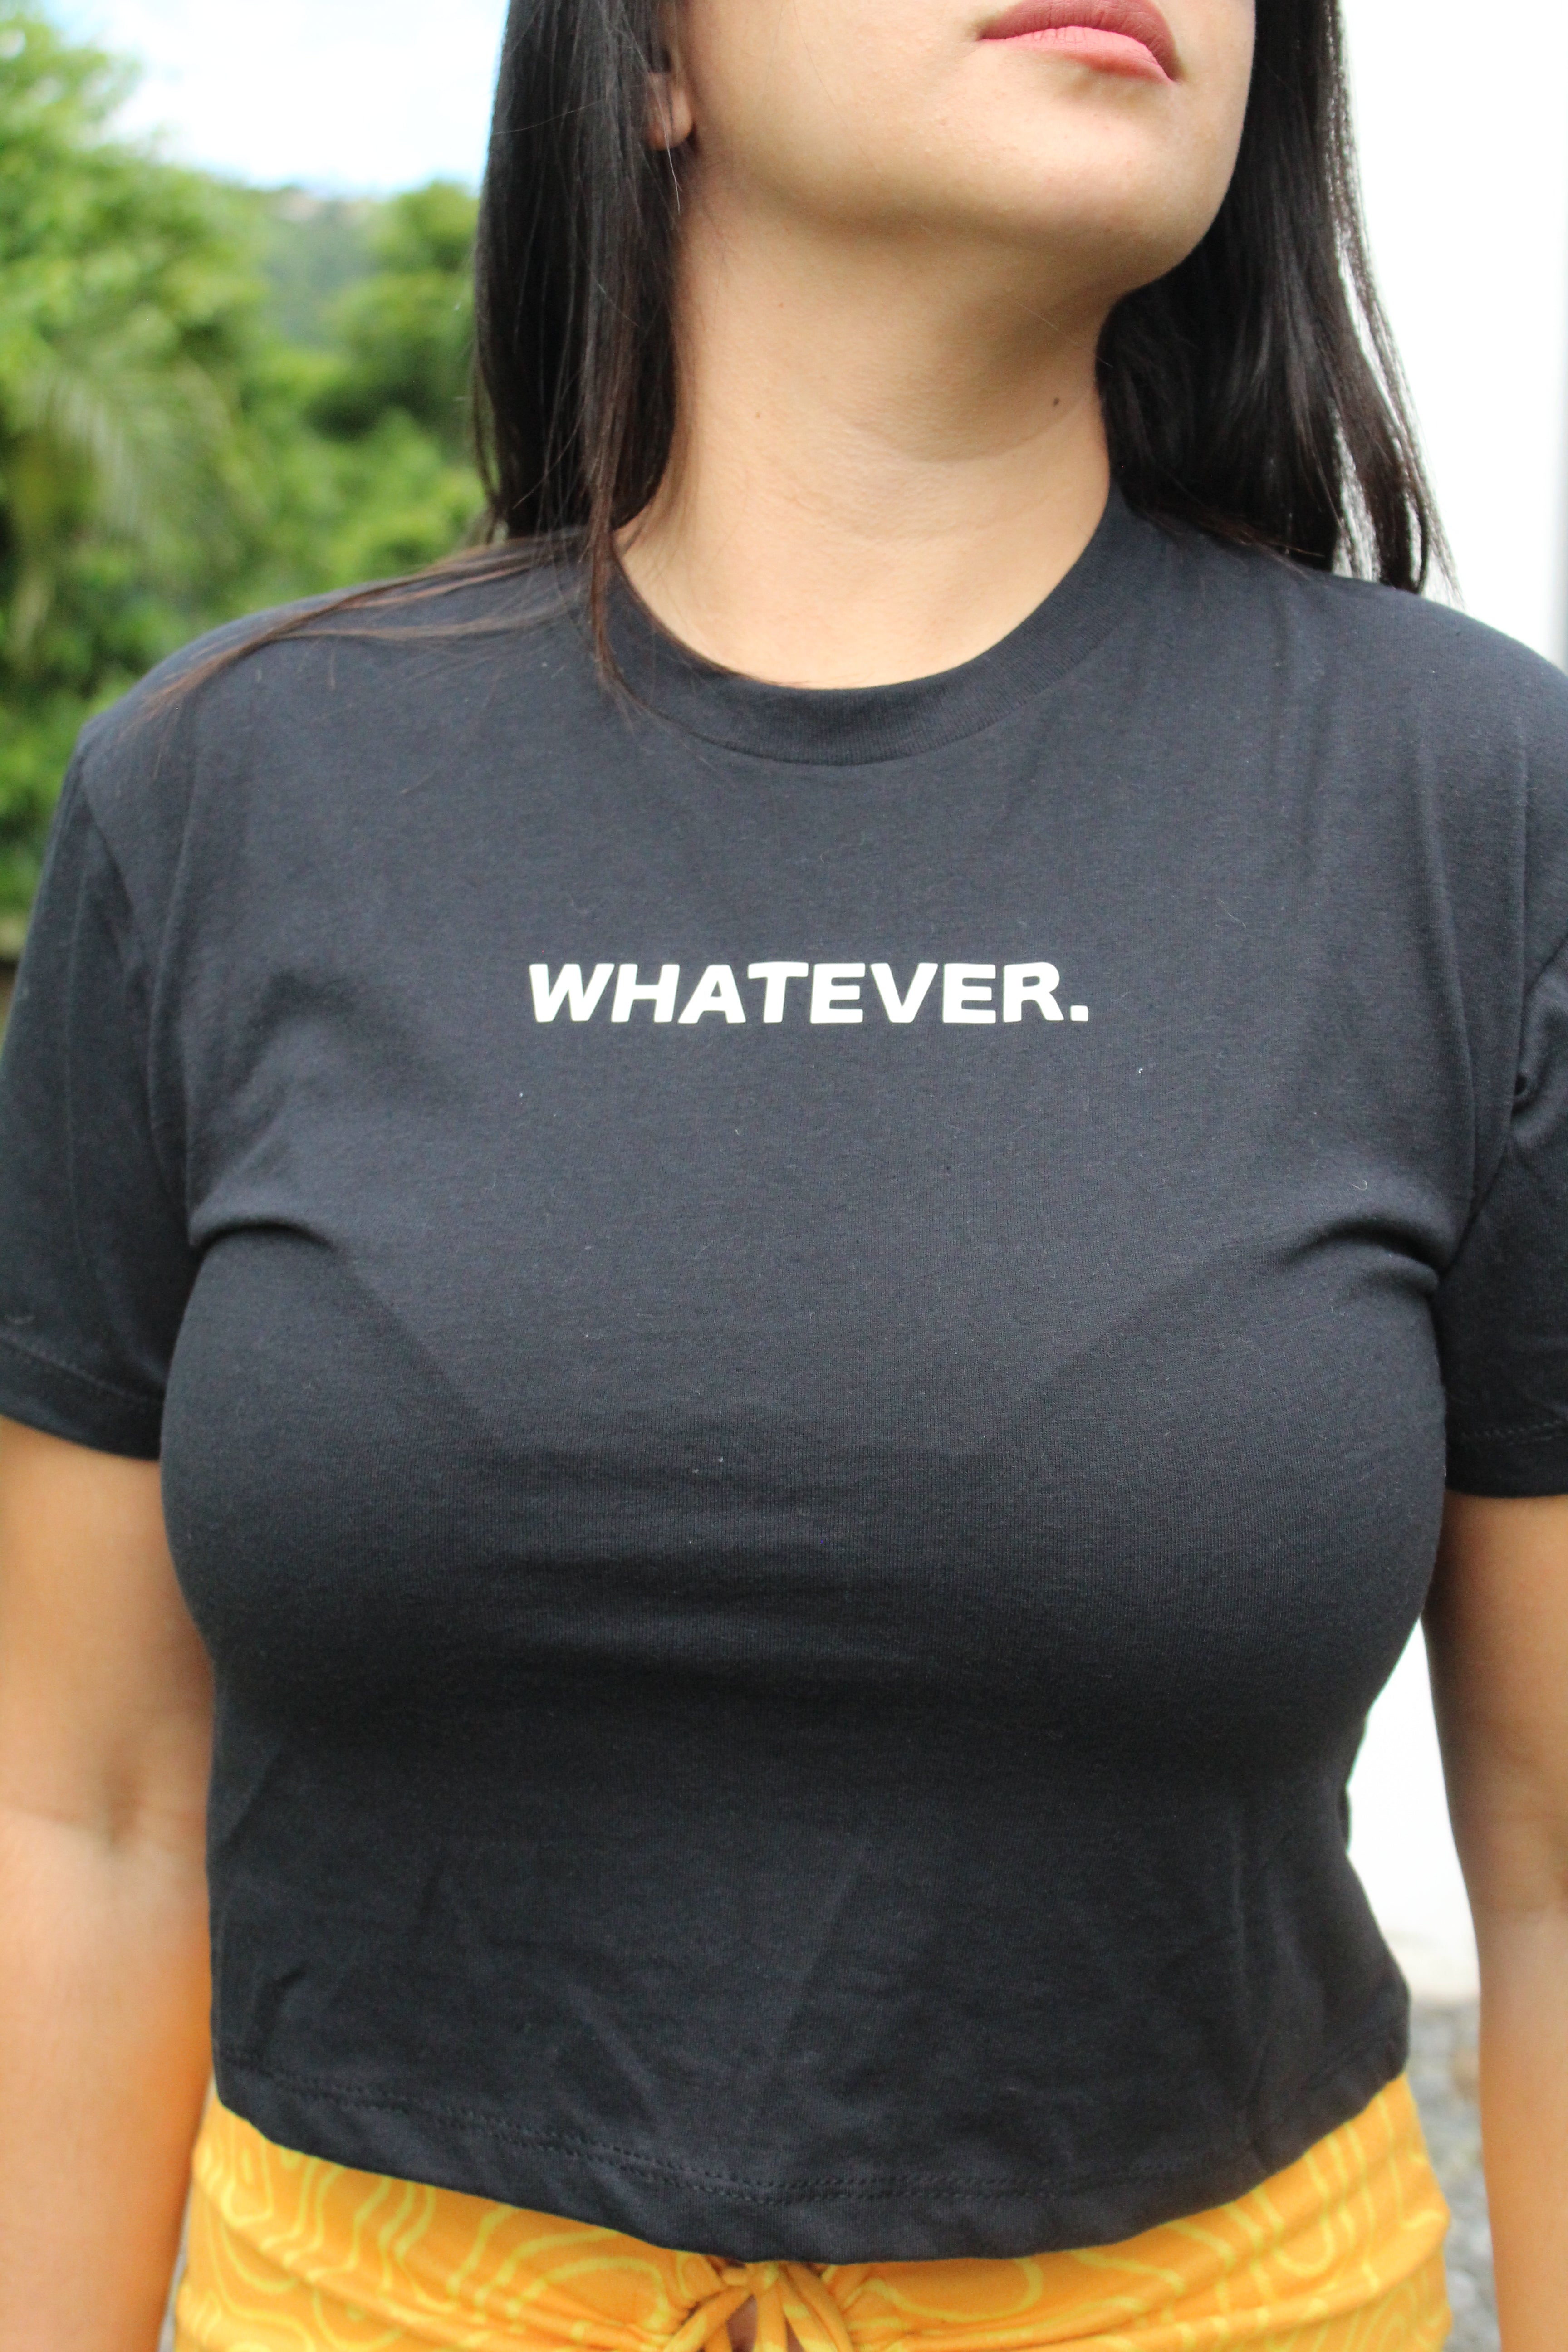 Whatever. - Tee